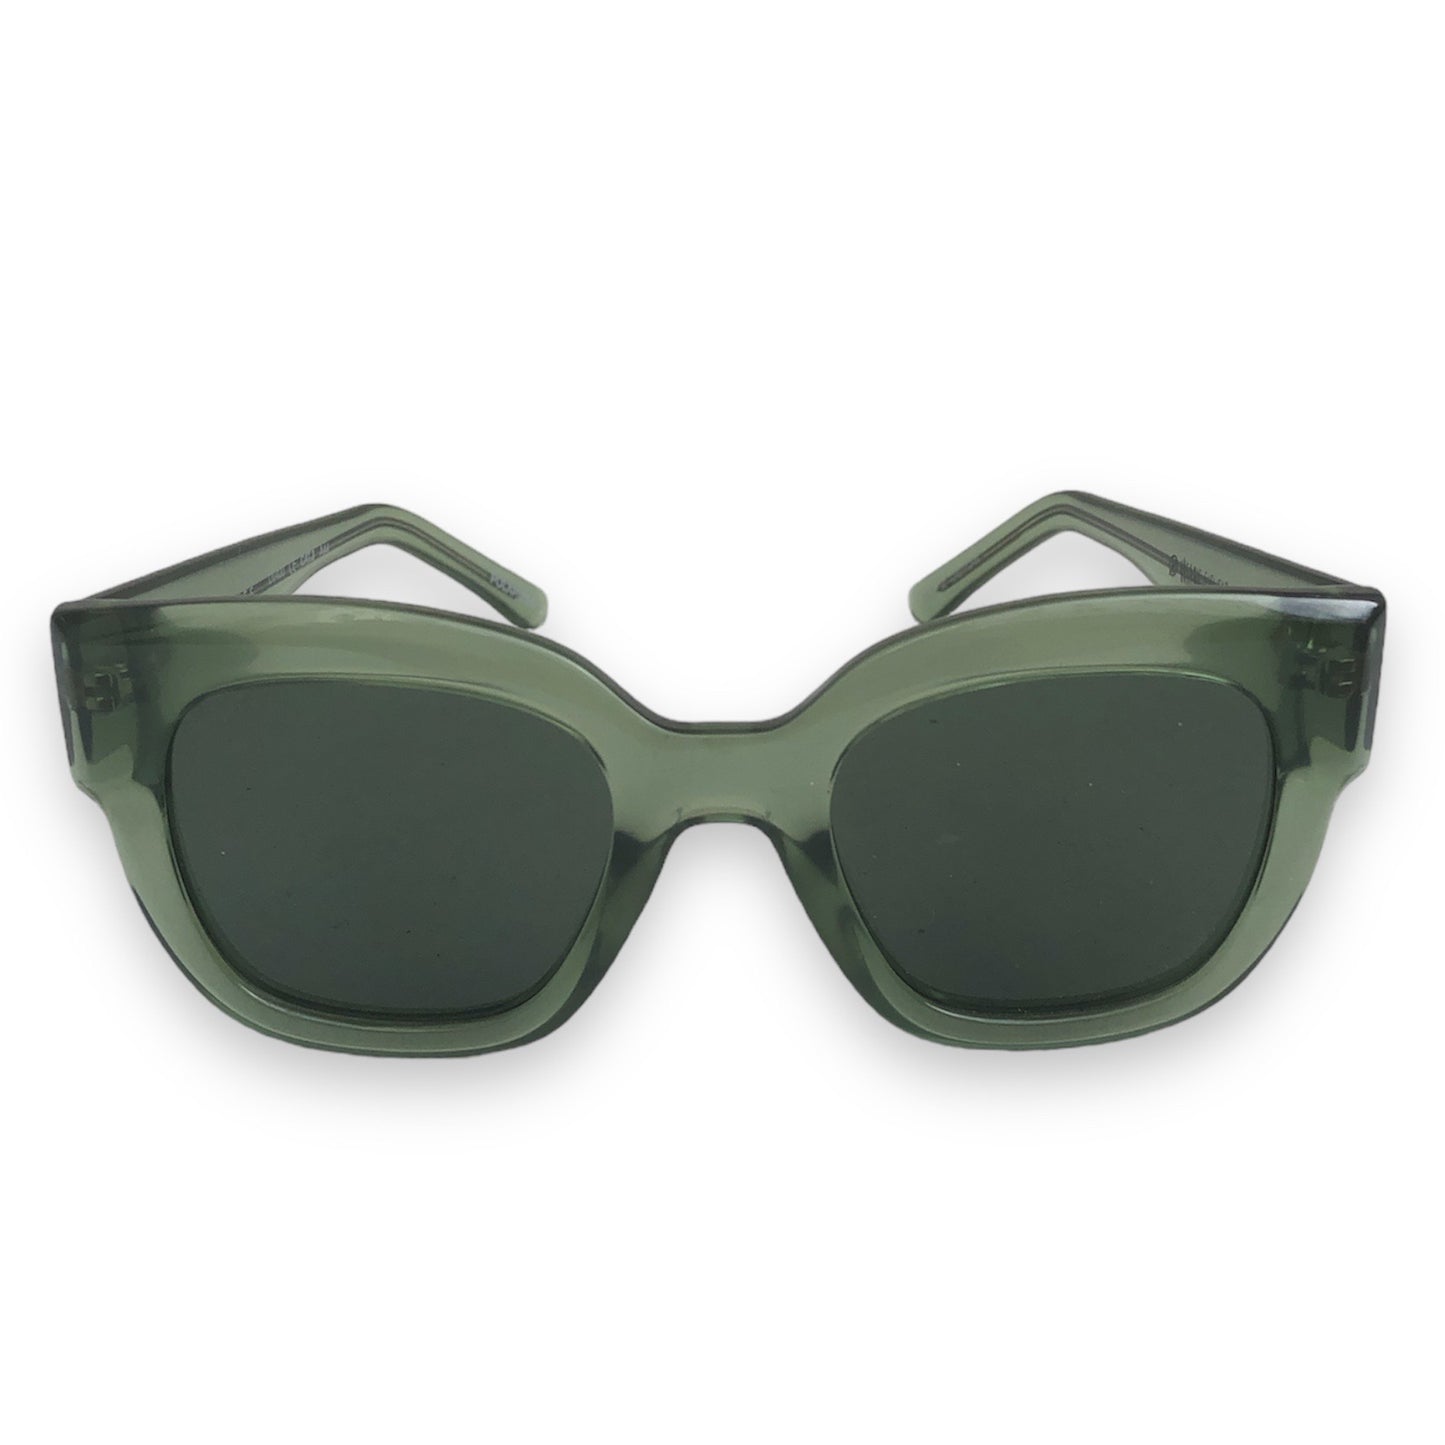 Sonnenbrille Monroe aus pflanzenbasiertem Kunststoff